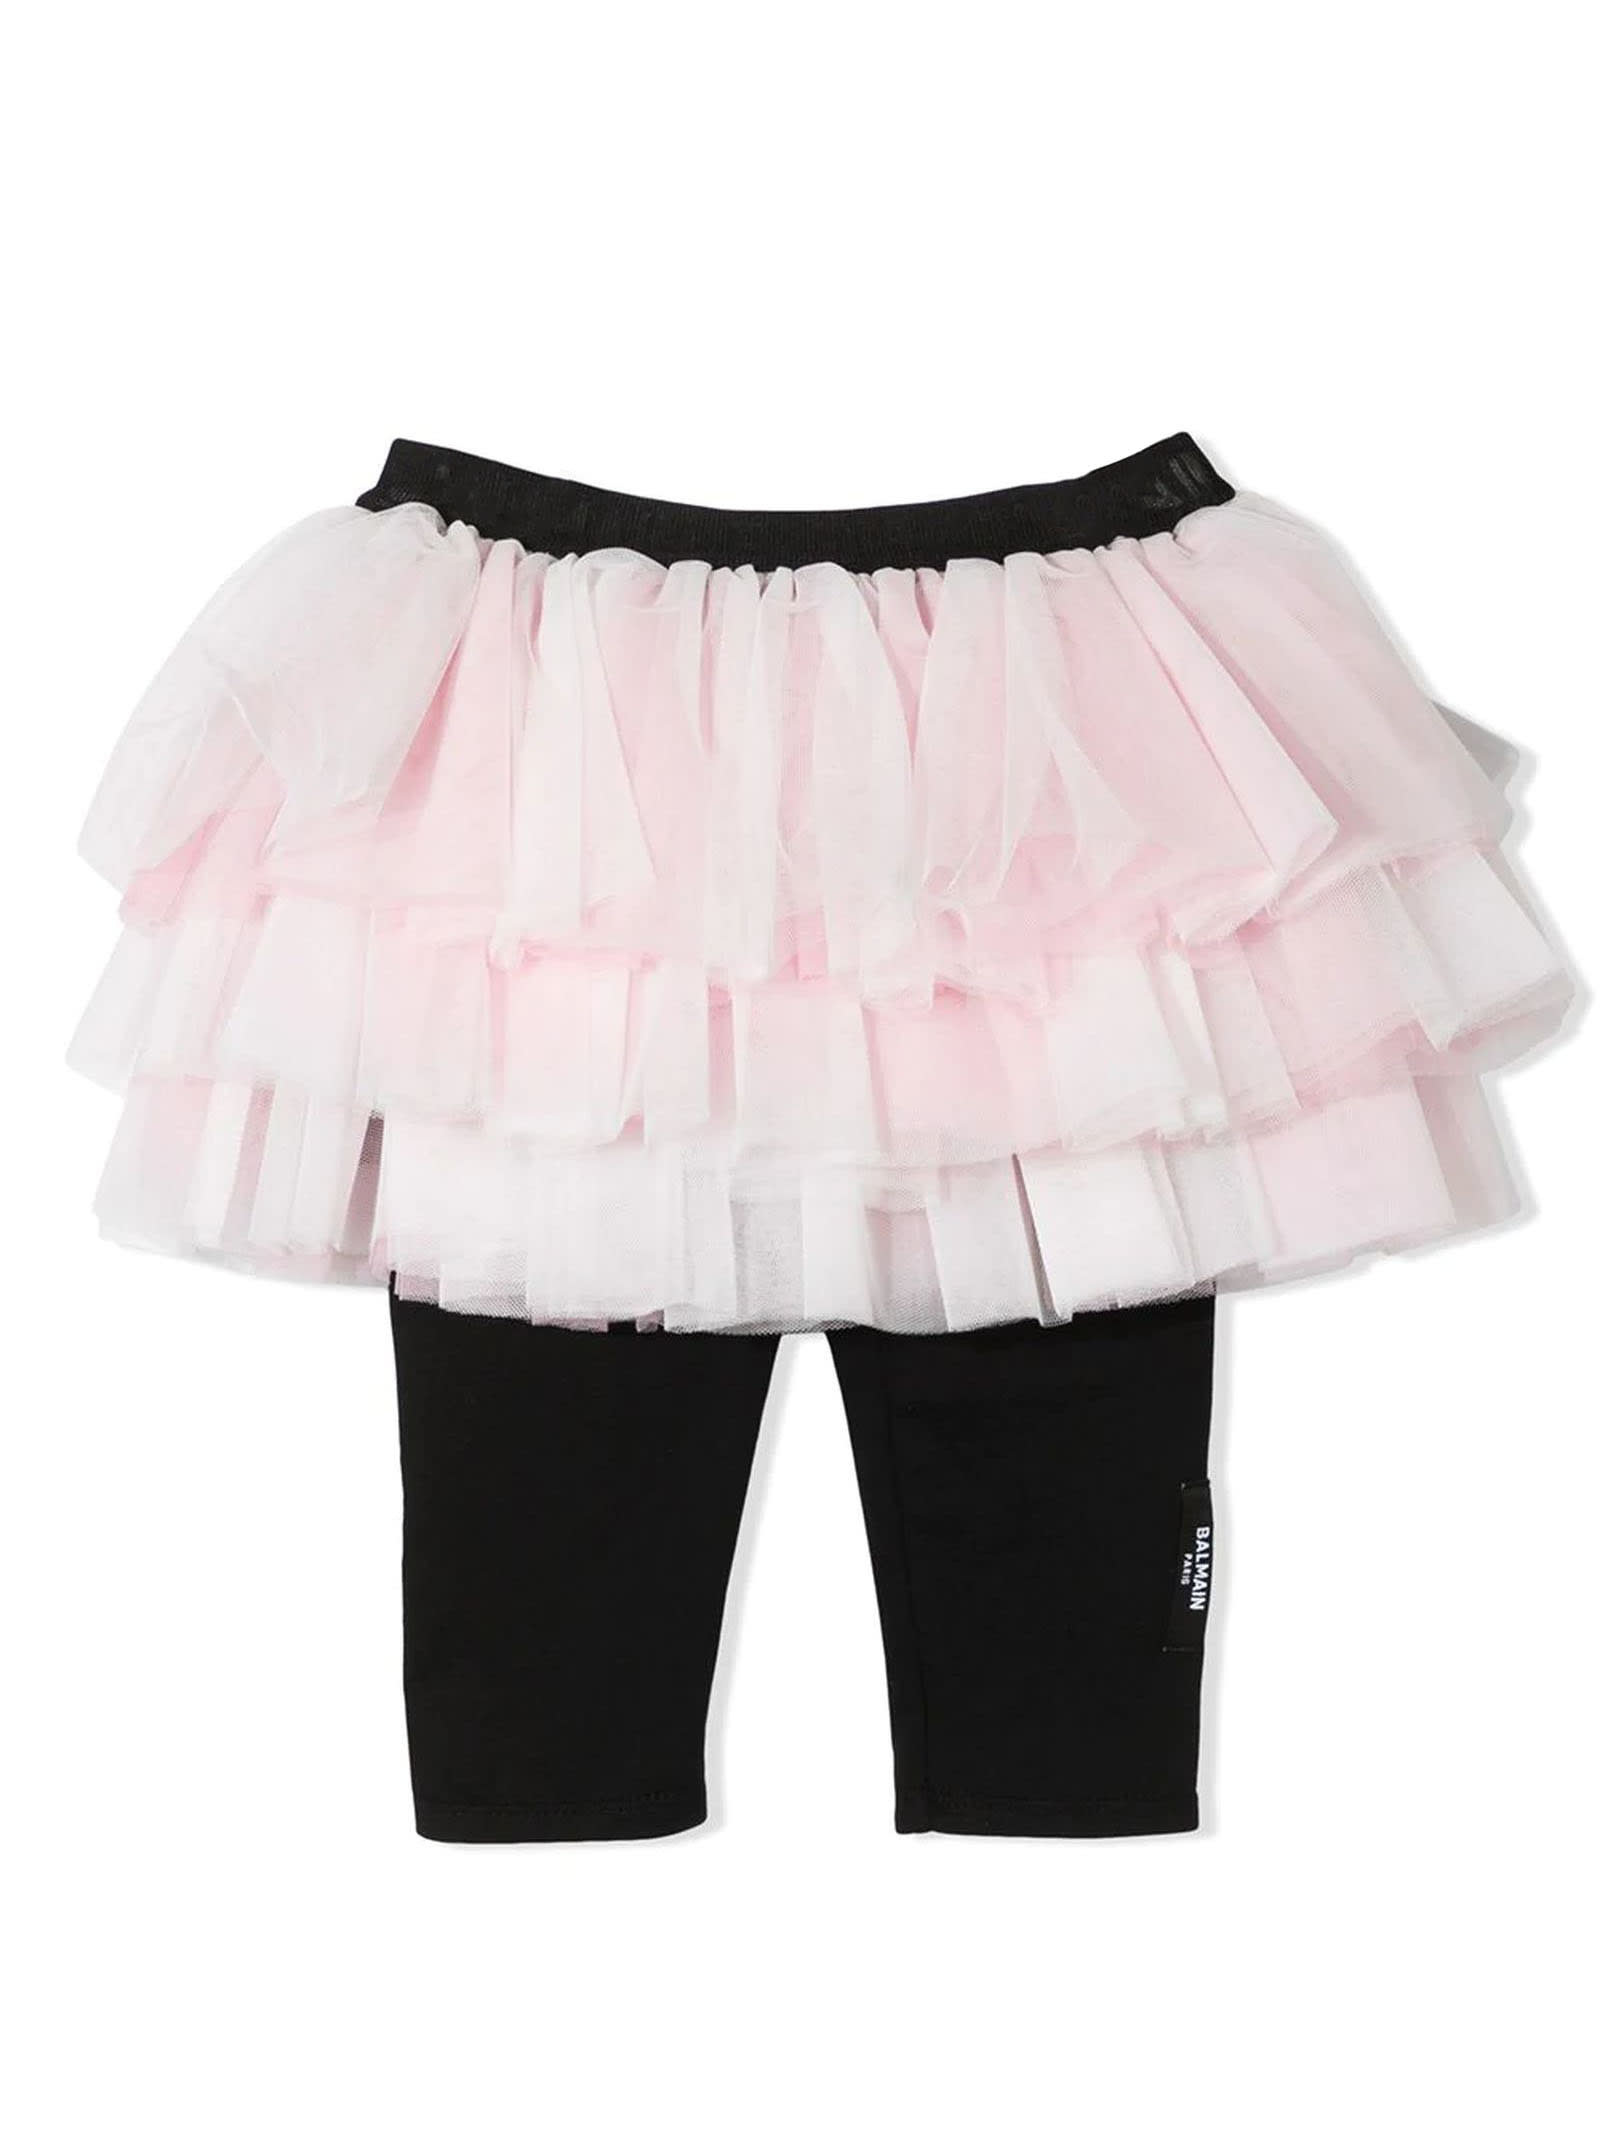 Balmain Pastel Pink And Black Tulle Skirt